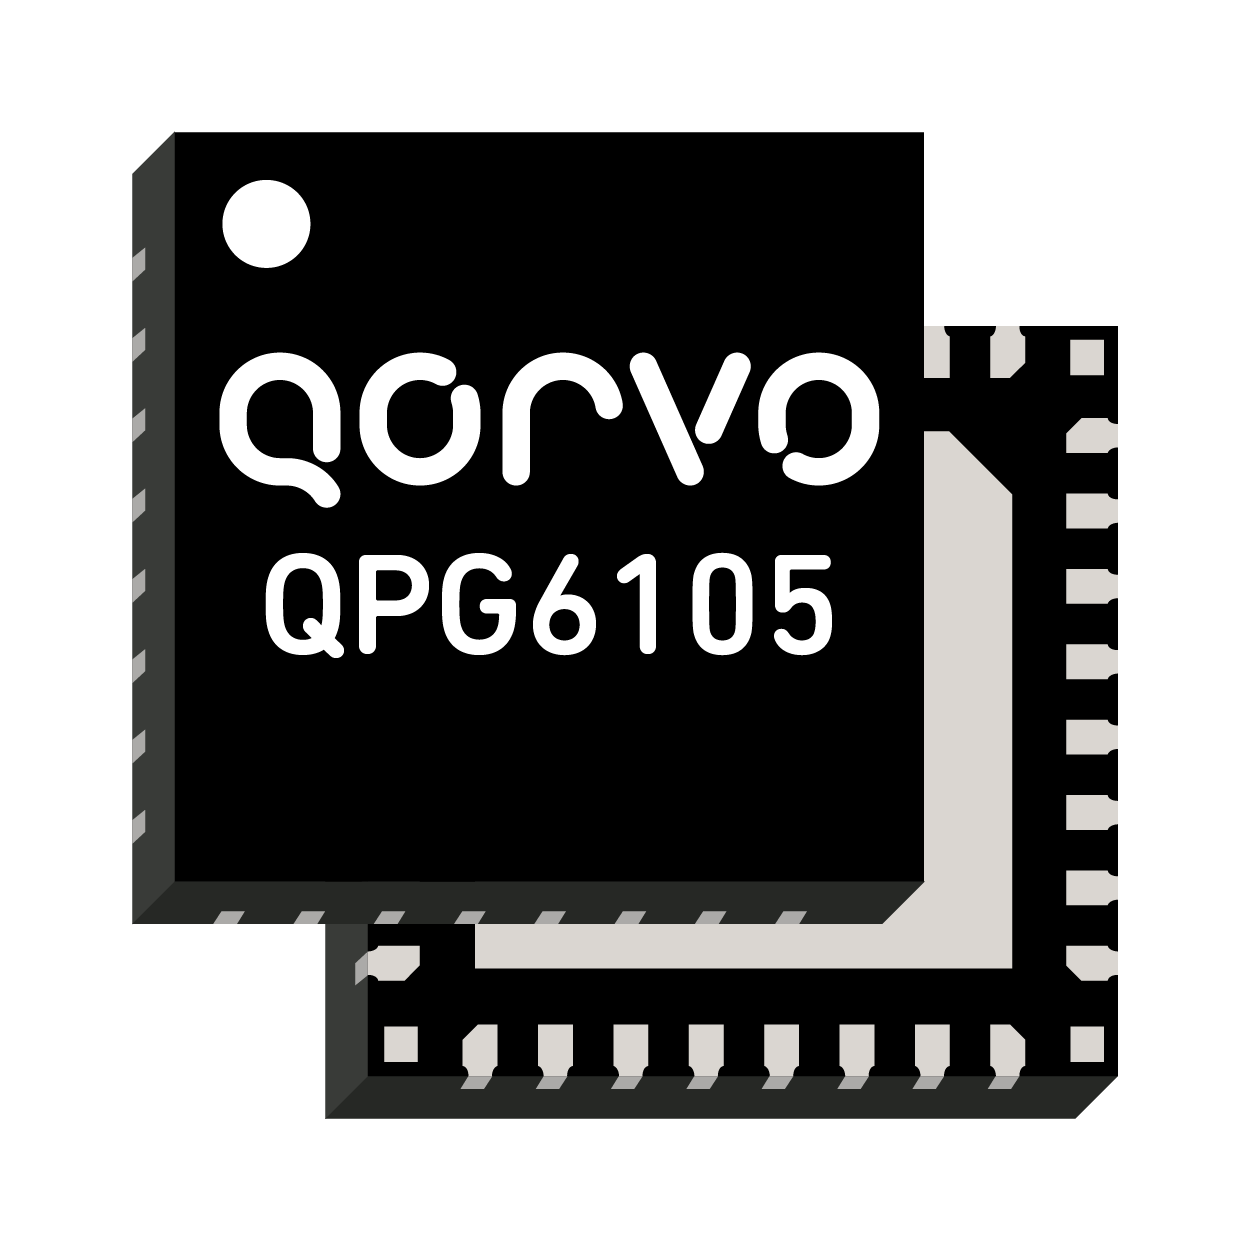 QPG 6105 Qorvo